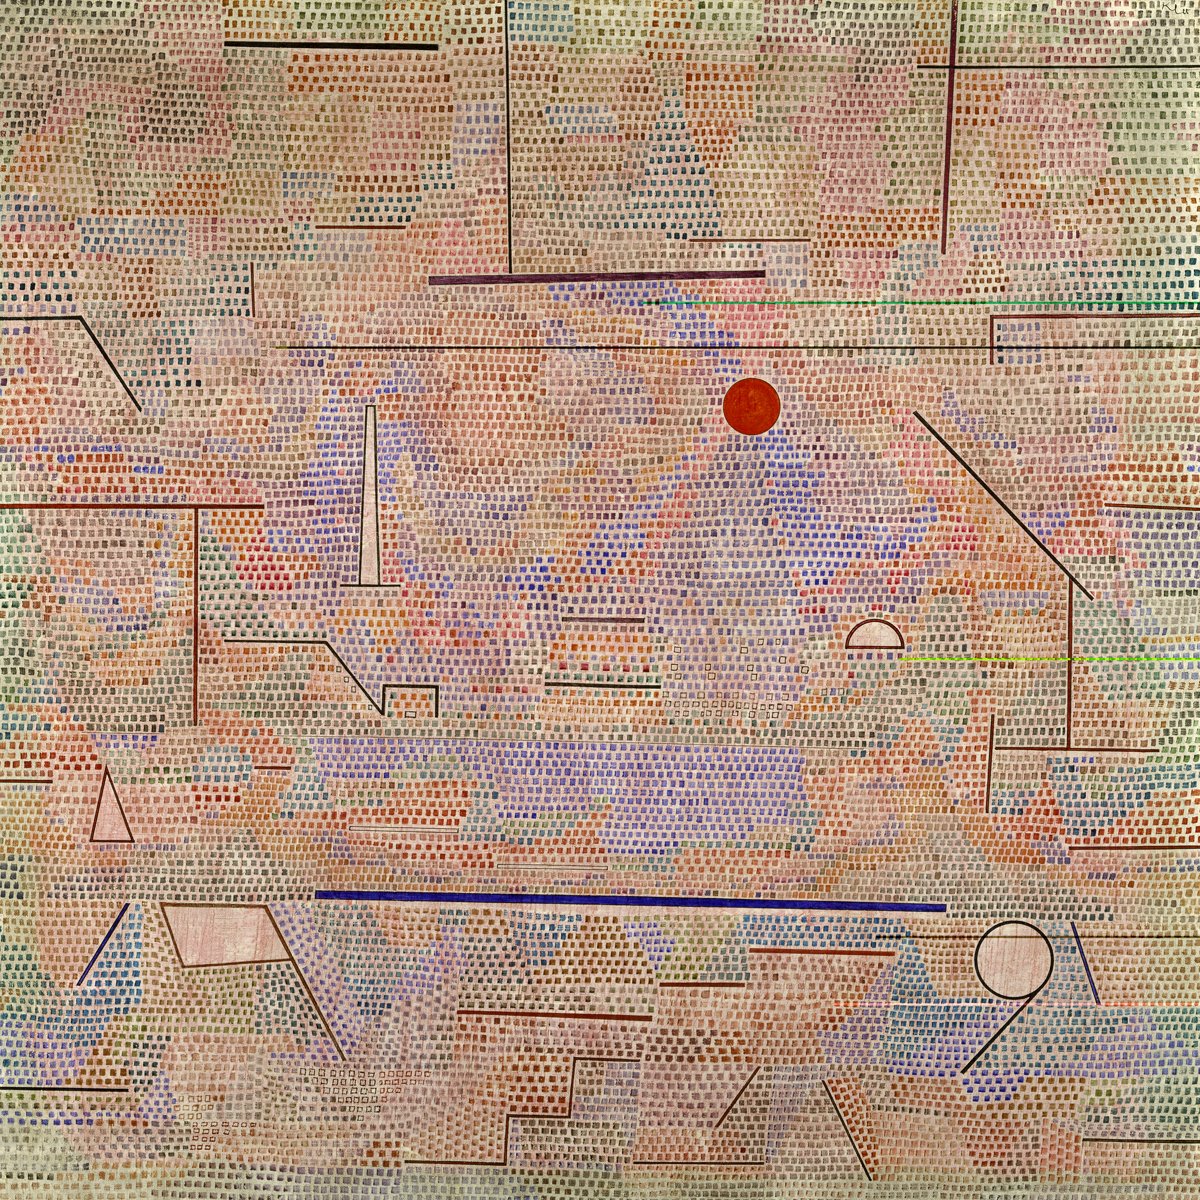 Paul Klee - Das Licht und Etliches